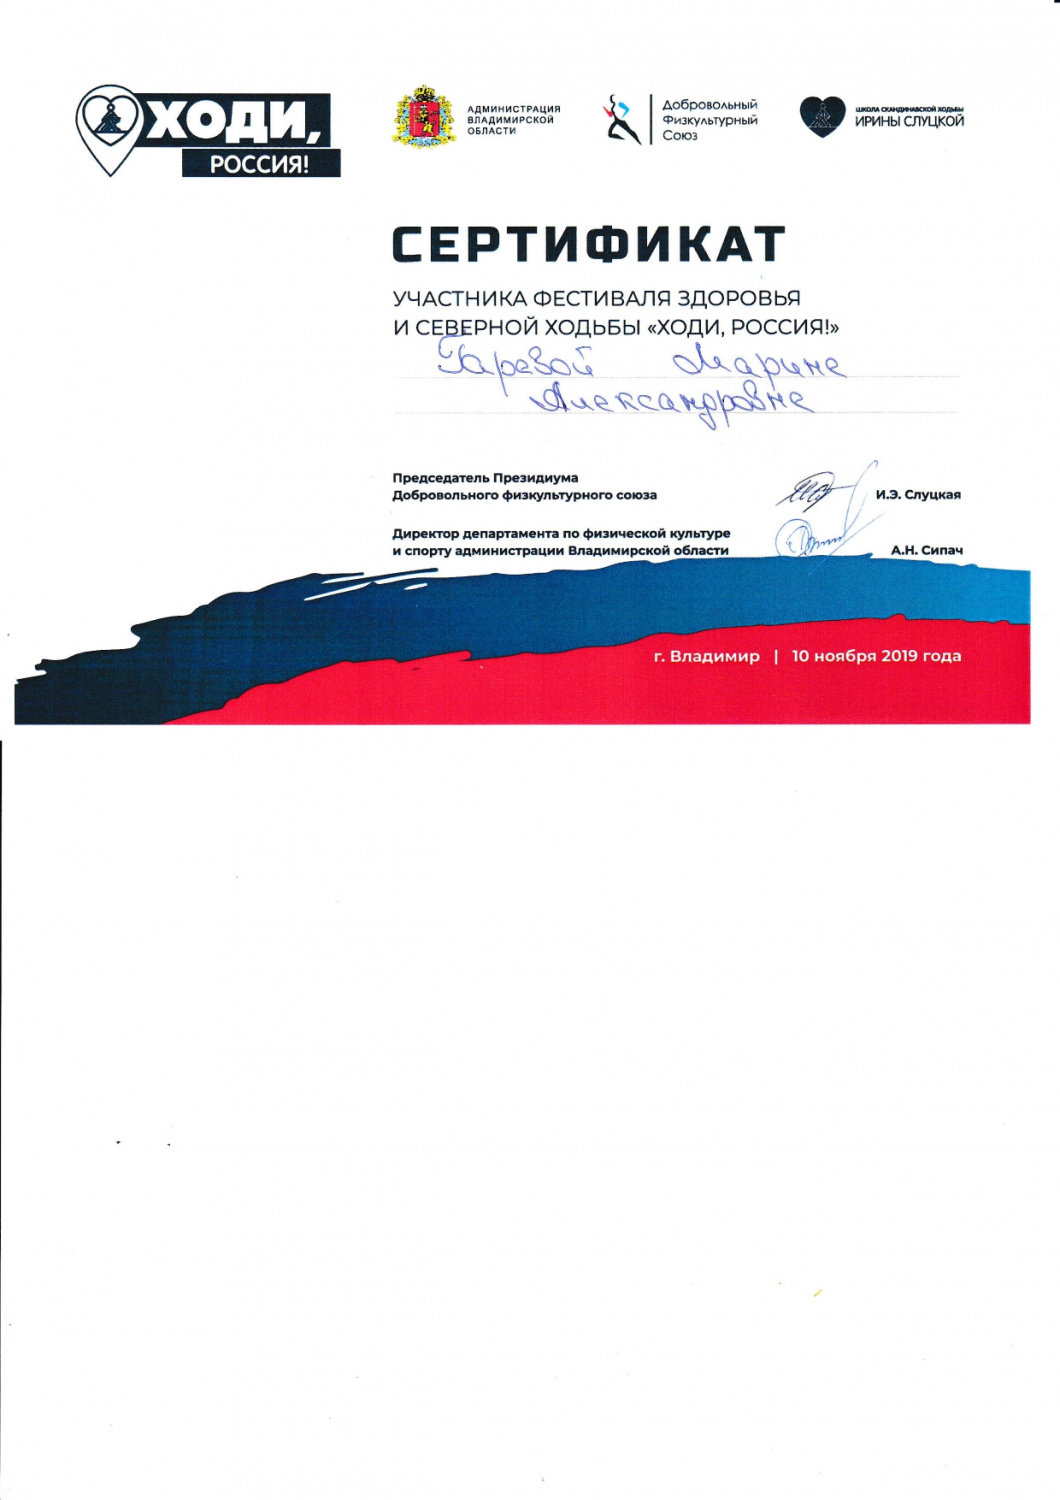 сертификат4_page-0001.jpg